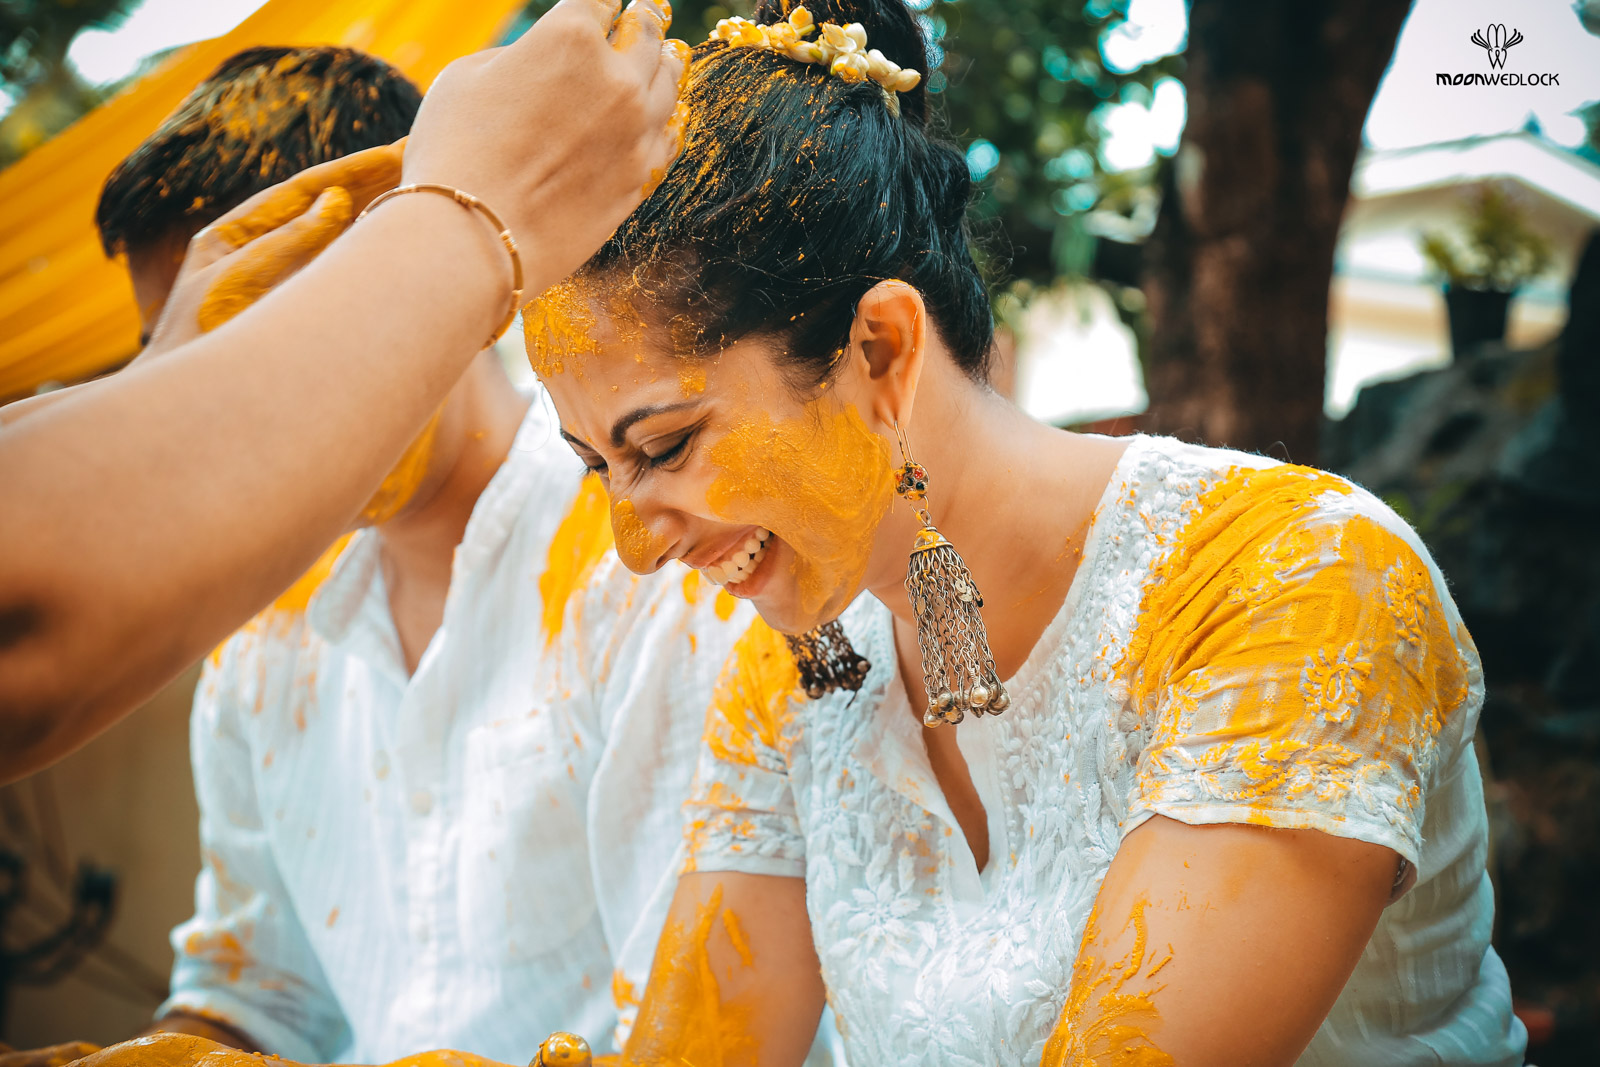 bangalore-wedding-photographers-moonwedlock (7)